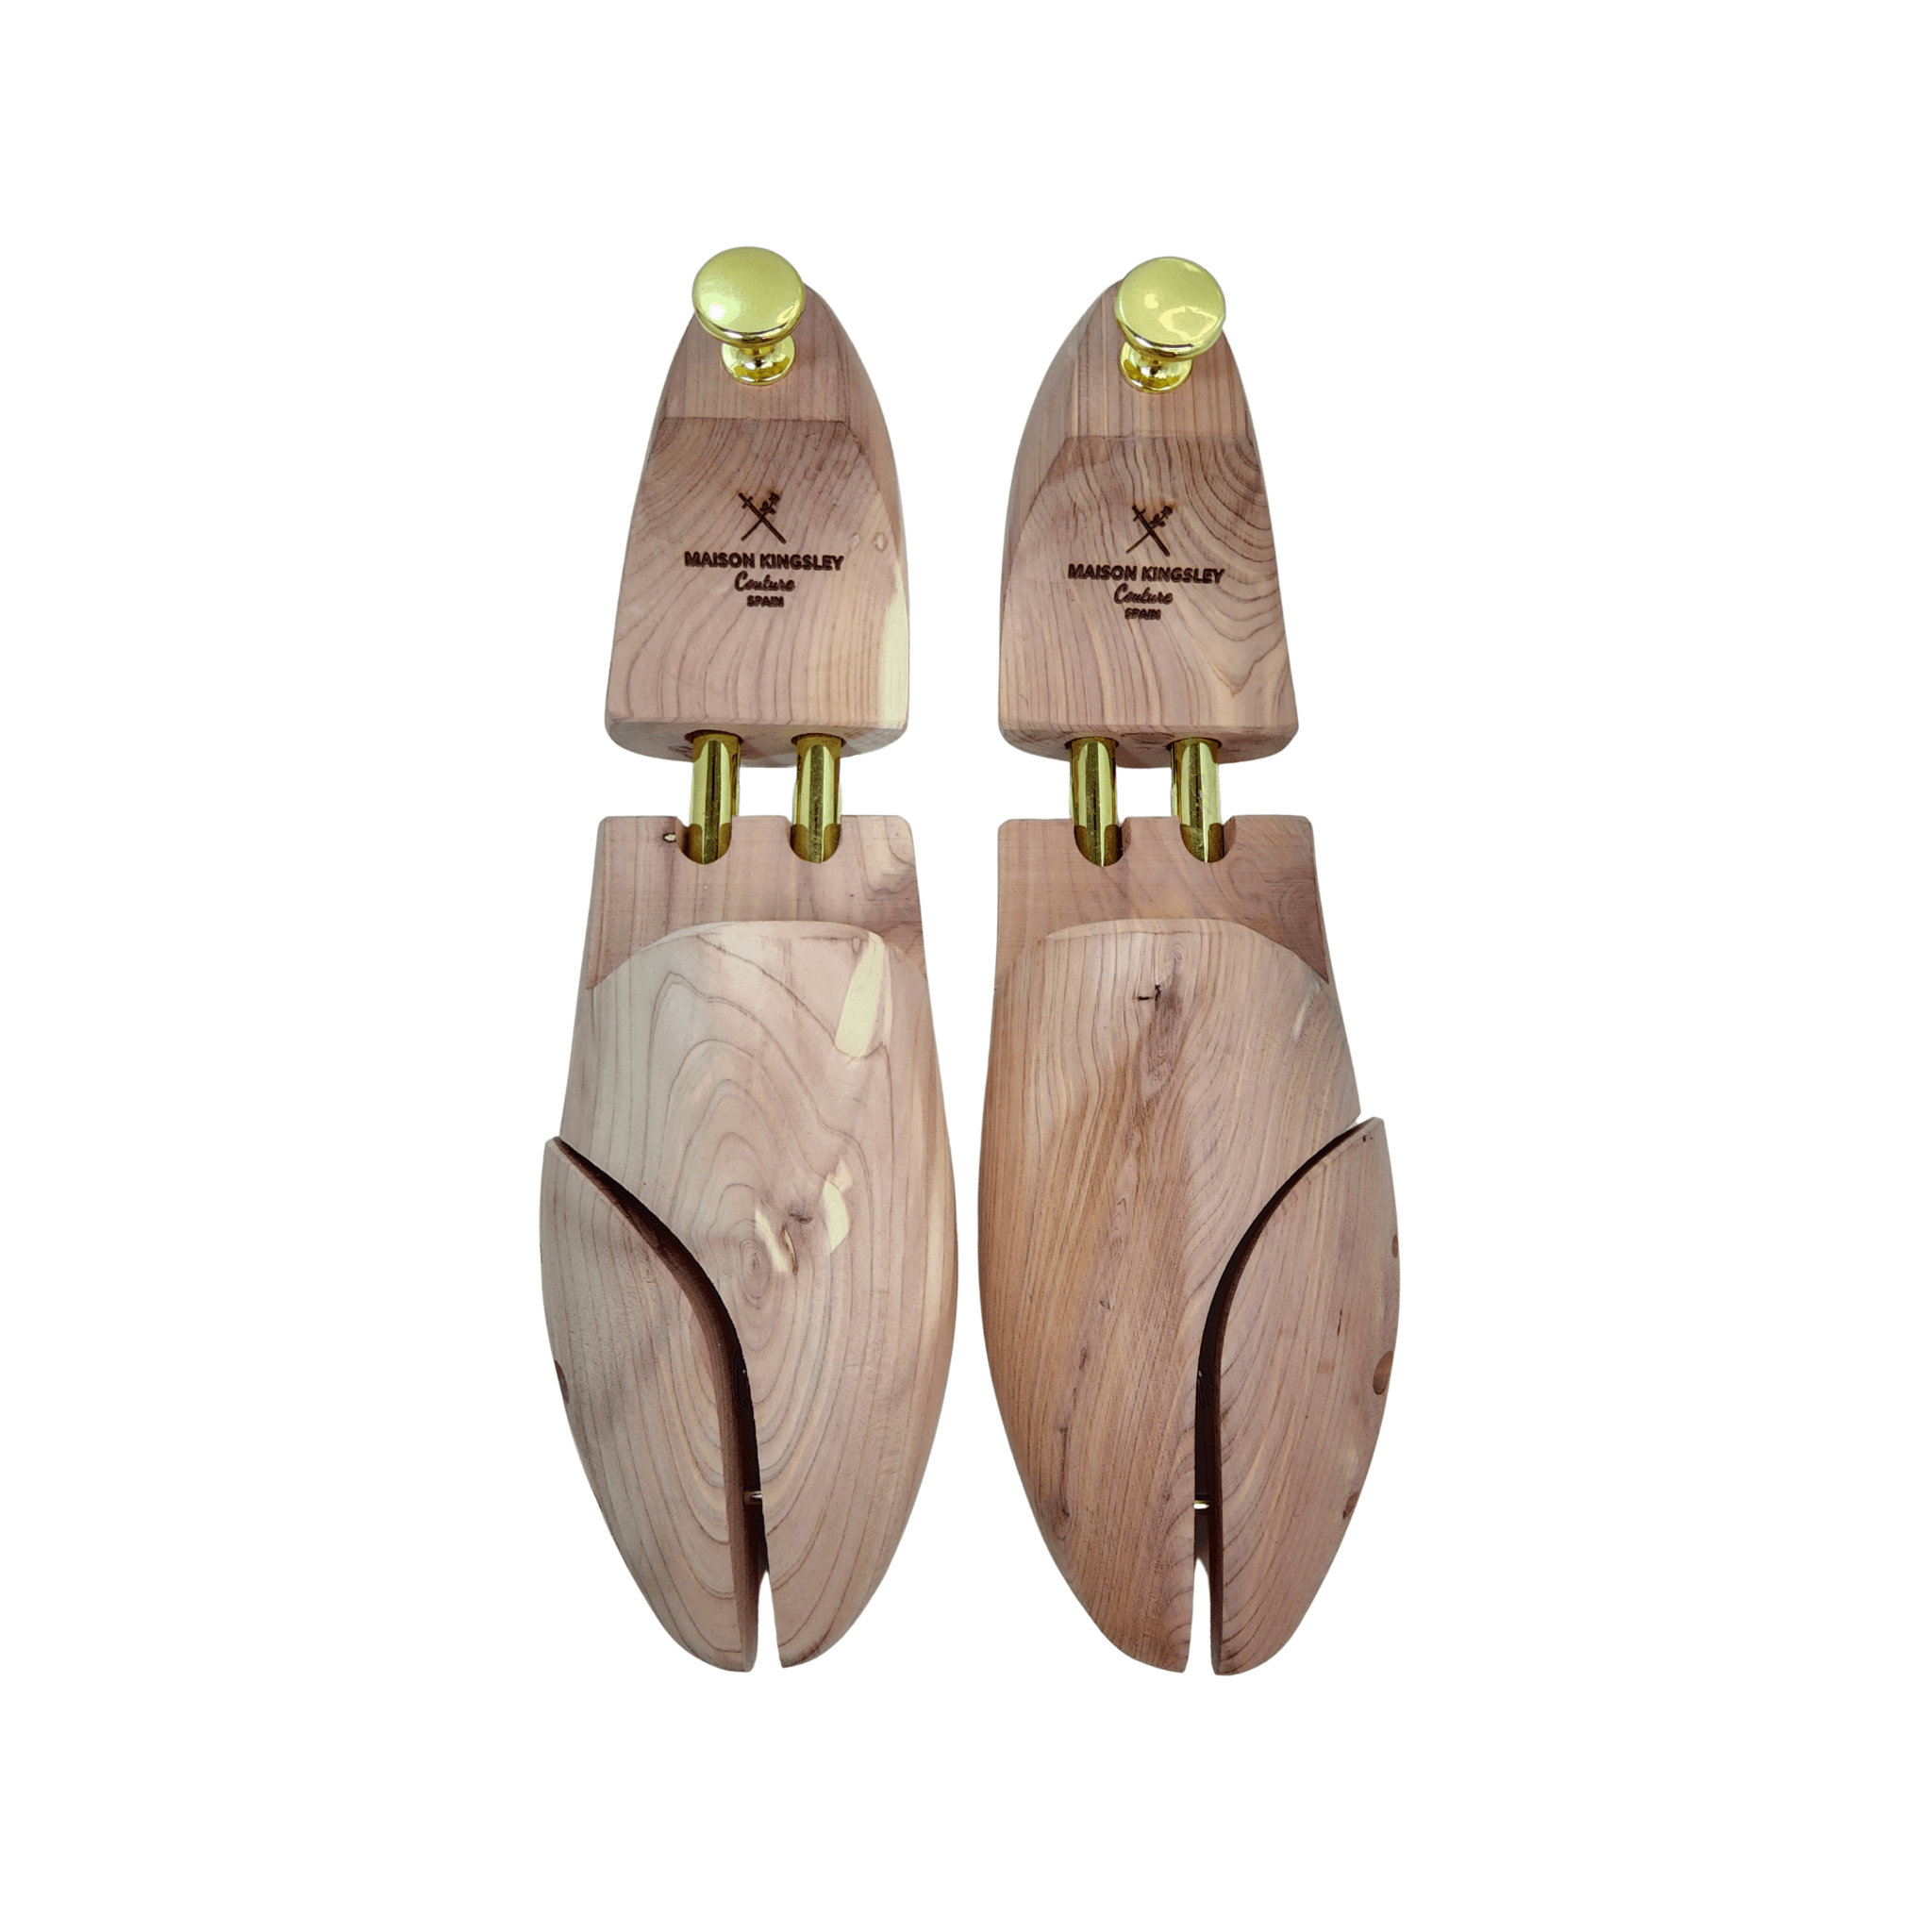 Men's Alligator Wholecut Dress Shoes in Burgundy - Maison de Kingsley Couture Harmonie et Fureur Spain